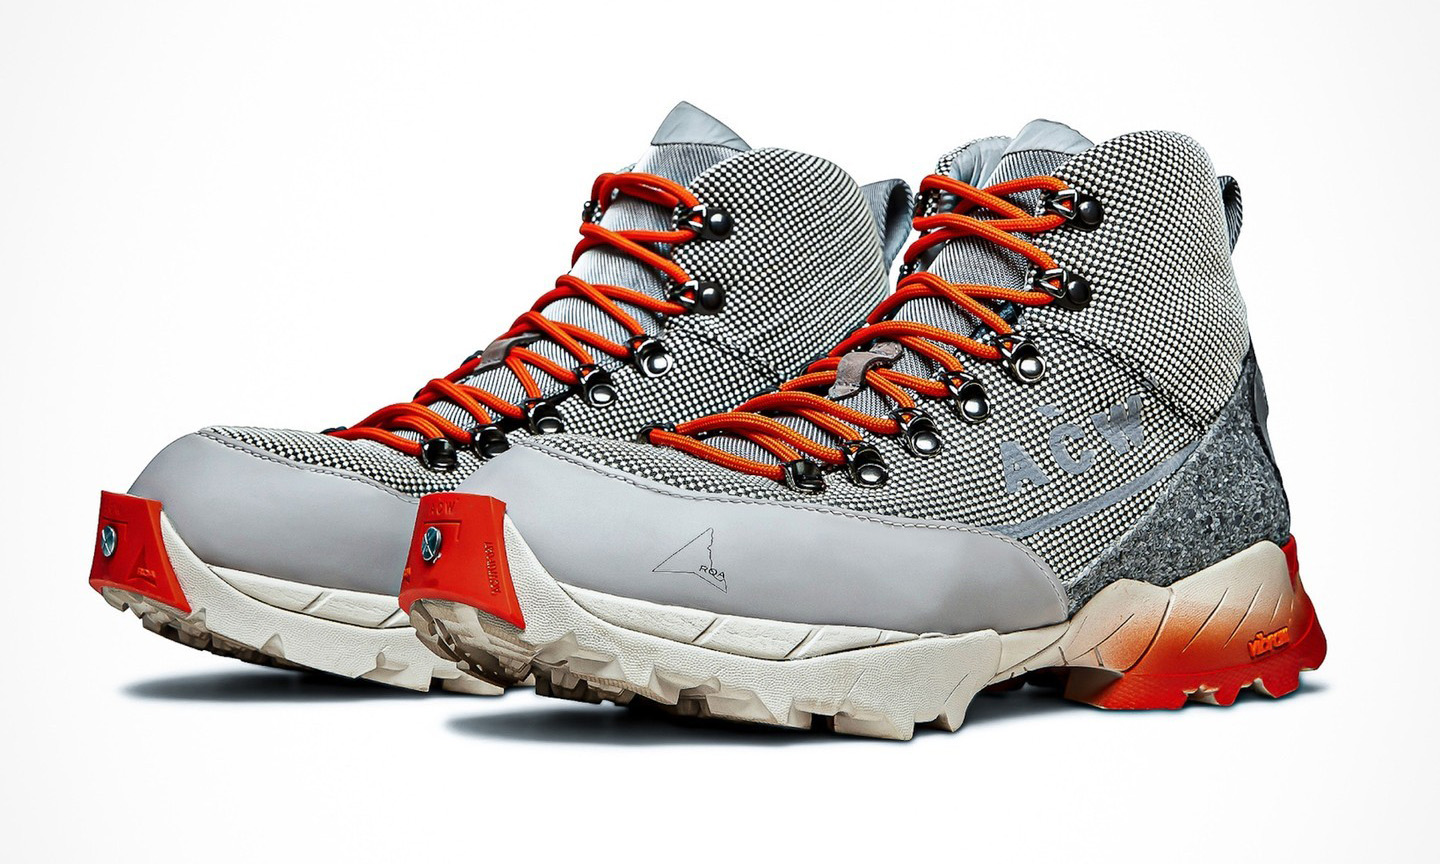 A-COLD-WALL* x ROA 登山鞋款系列现已发售